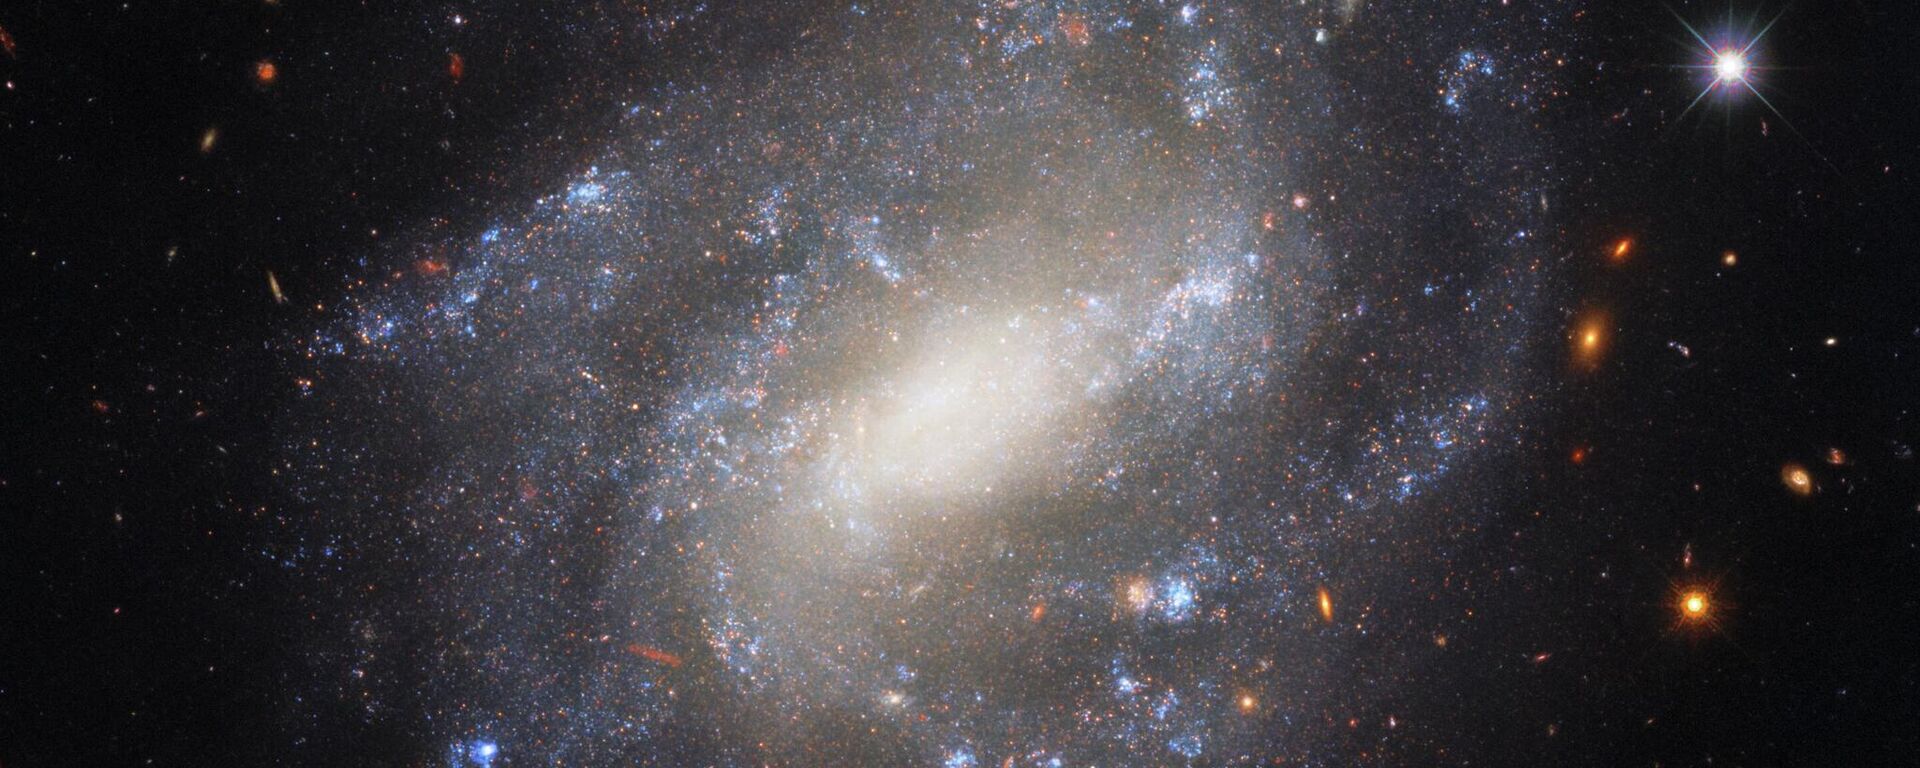 Image of spiral galaxy UGC 9391 taken by Hubble Space Telescope’s Wide Field Camera 3 - Sputnik International, 1920, 18.12.2022